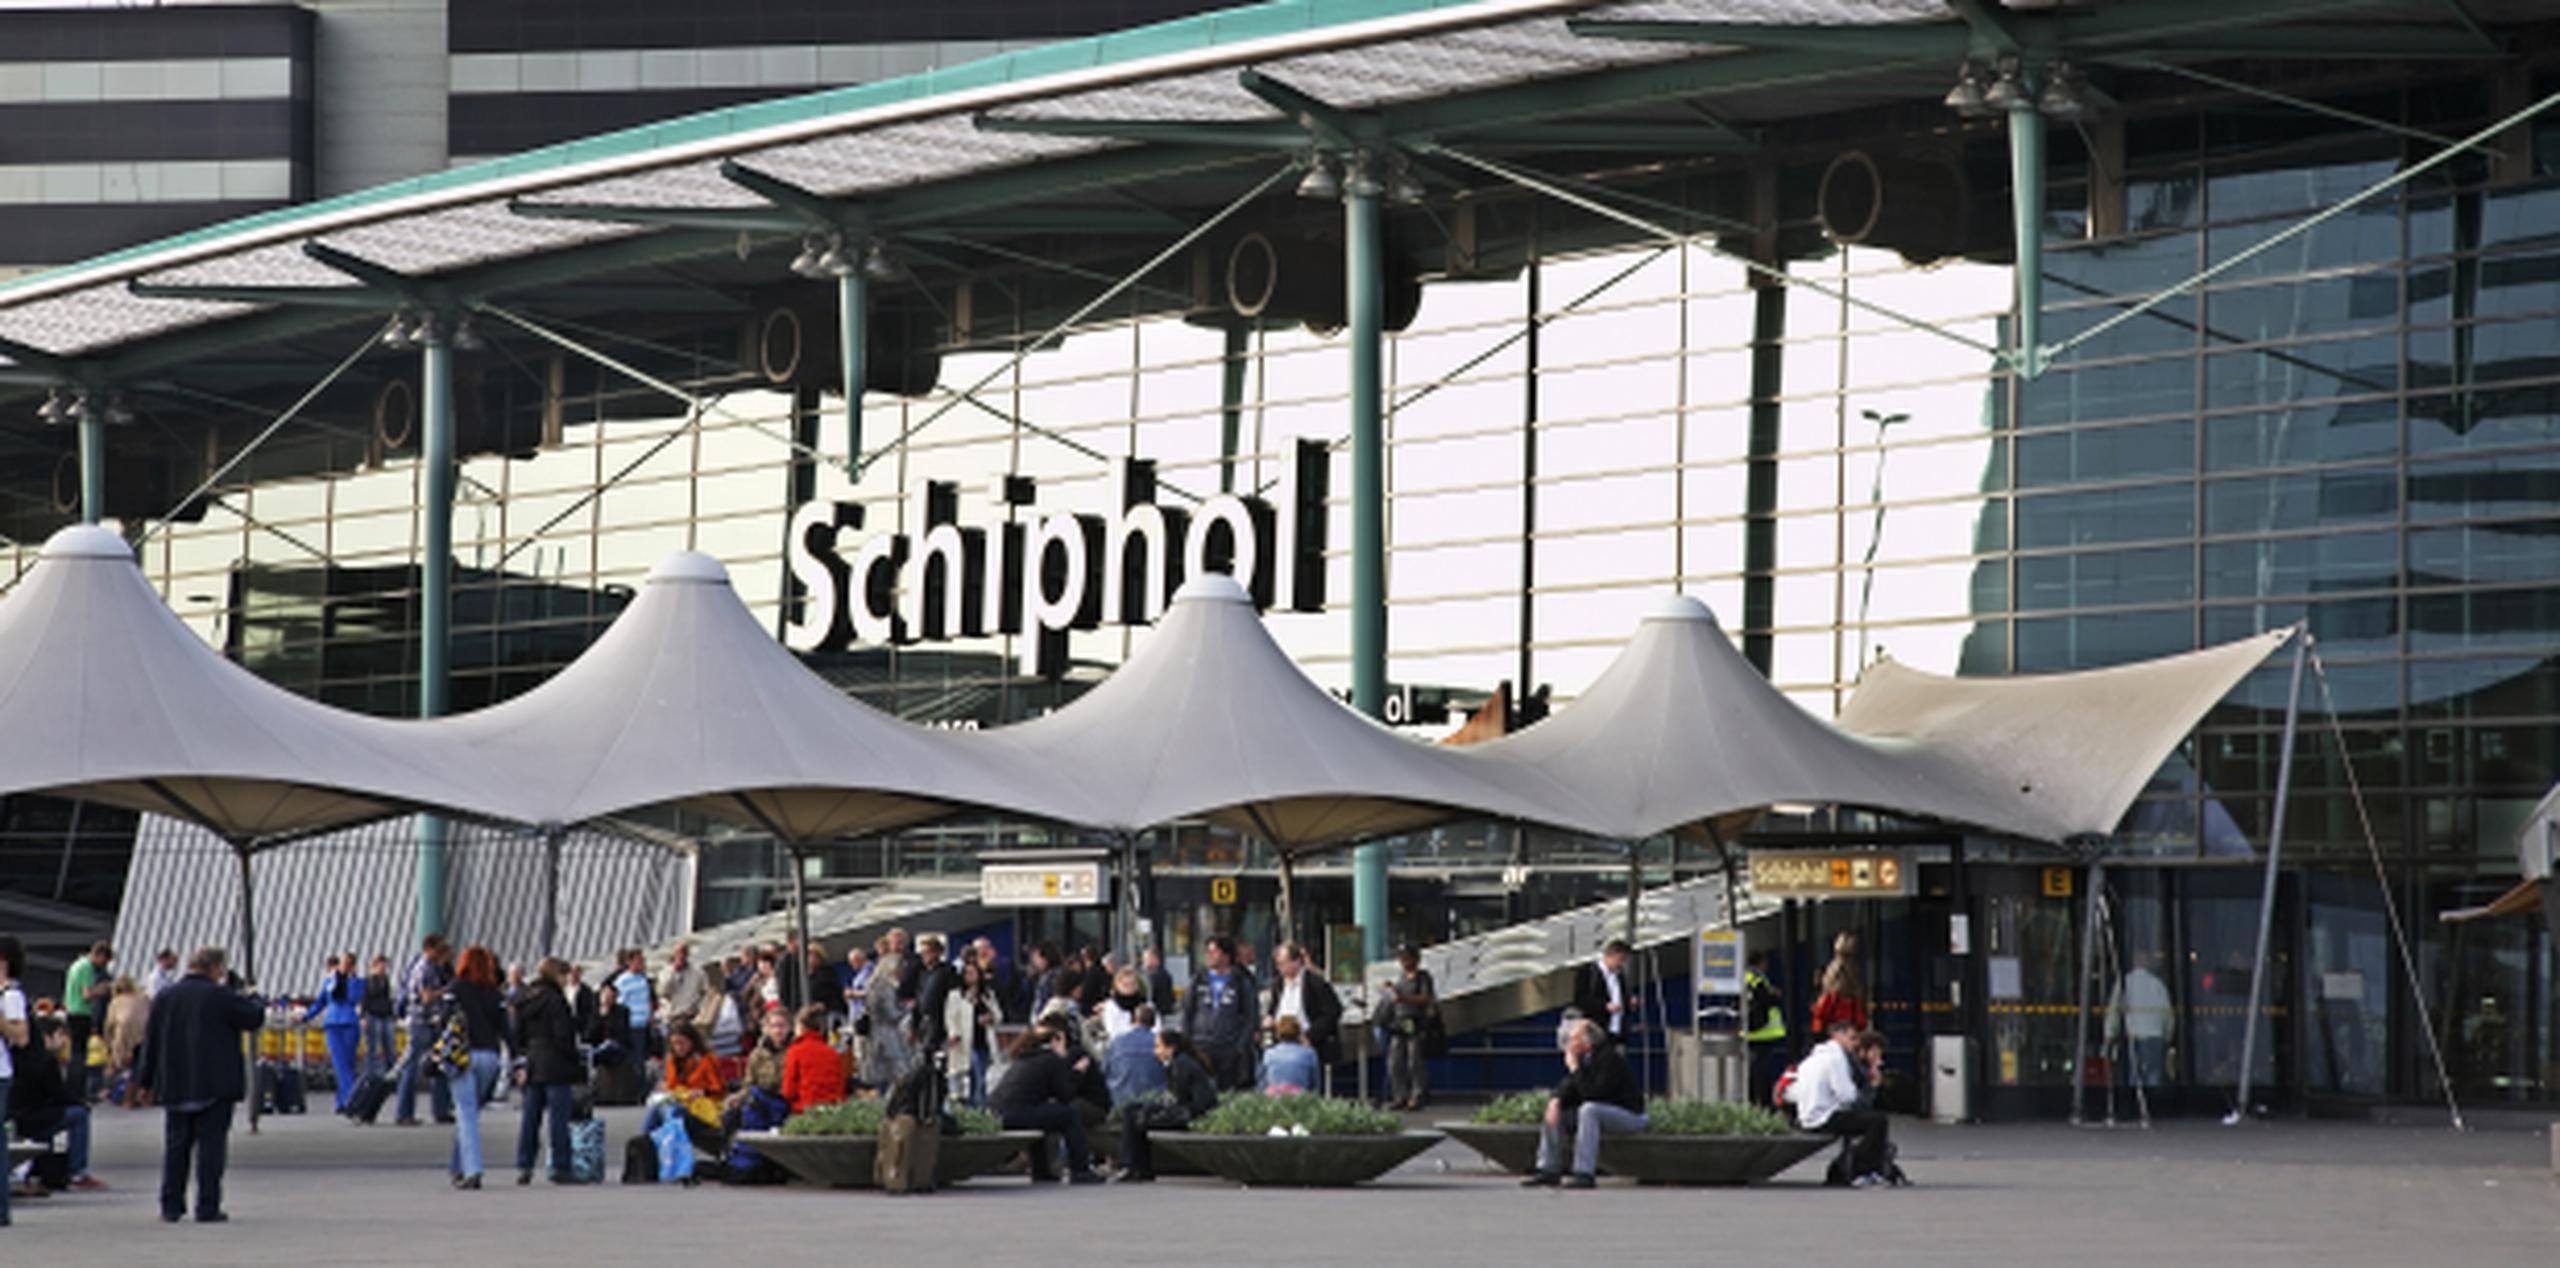 Schiphol es uno de los aeropuertos de mayor tránsito aéreo de Europa. (Shutterstock)